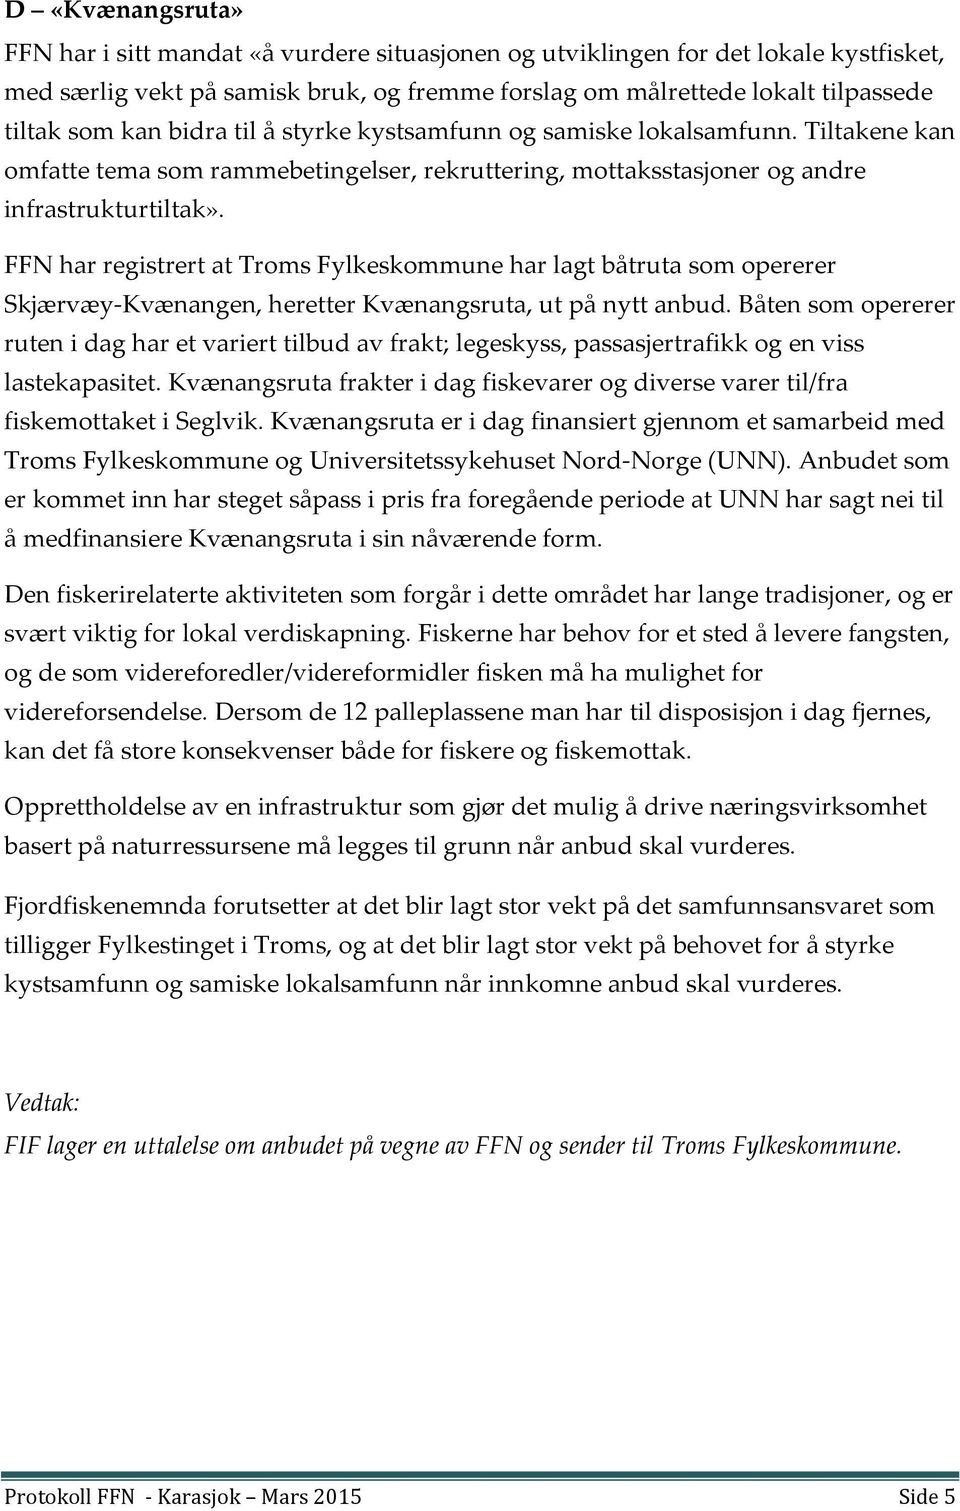 FFN har registrert at Troms Fylkeskommune har lagt båtruta som opererer Skjærvæy-Kvænangen, heretter Kvænangsruta, ut på nytt anbud.